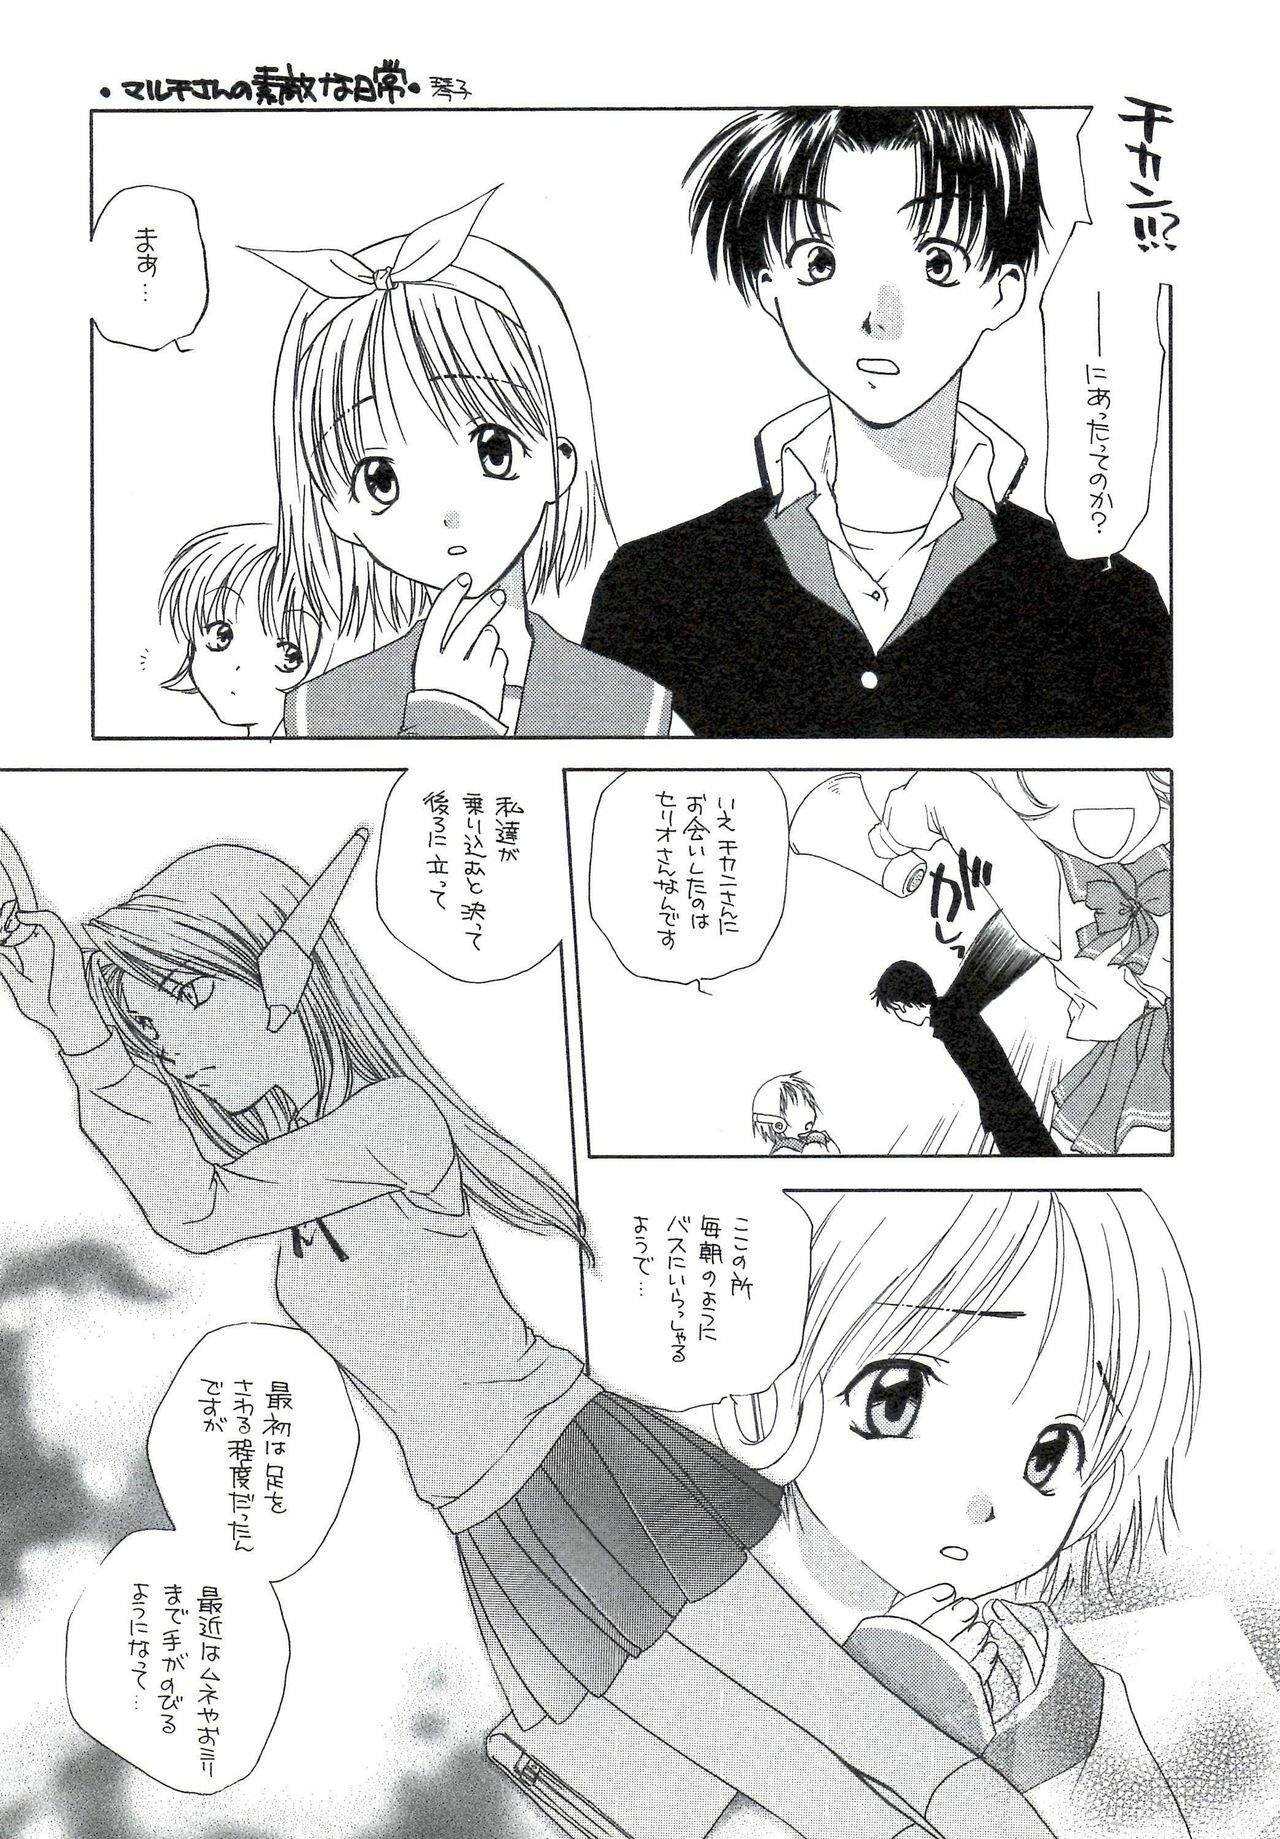 [UOTATSU18KINSHITEN (Fujimori Saya, Karasuyama)] Sakura no Sono (ToHeart) page 5 full